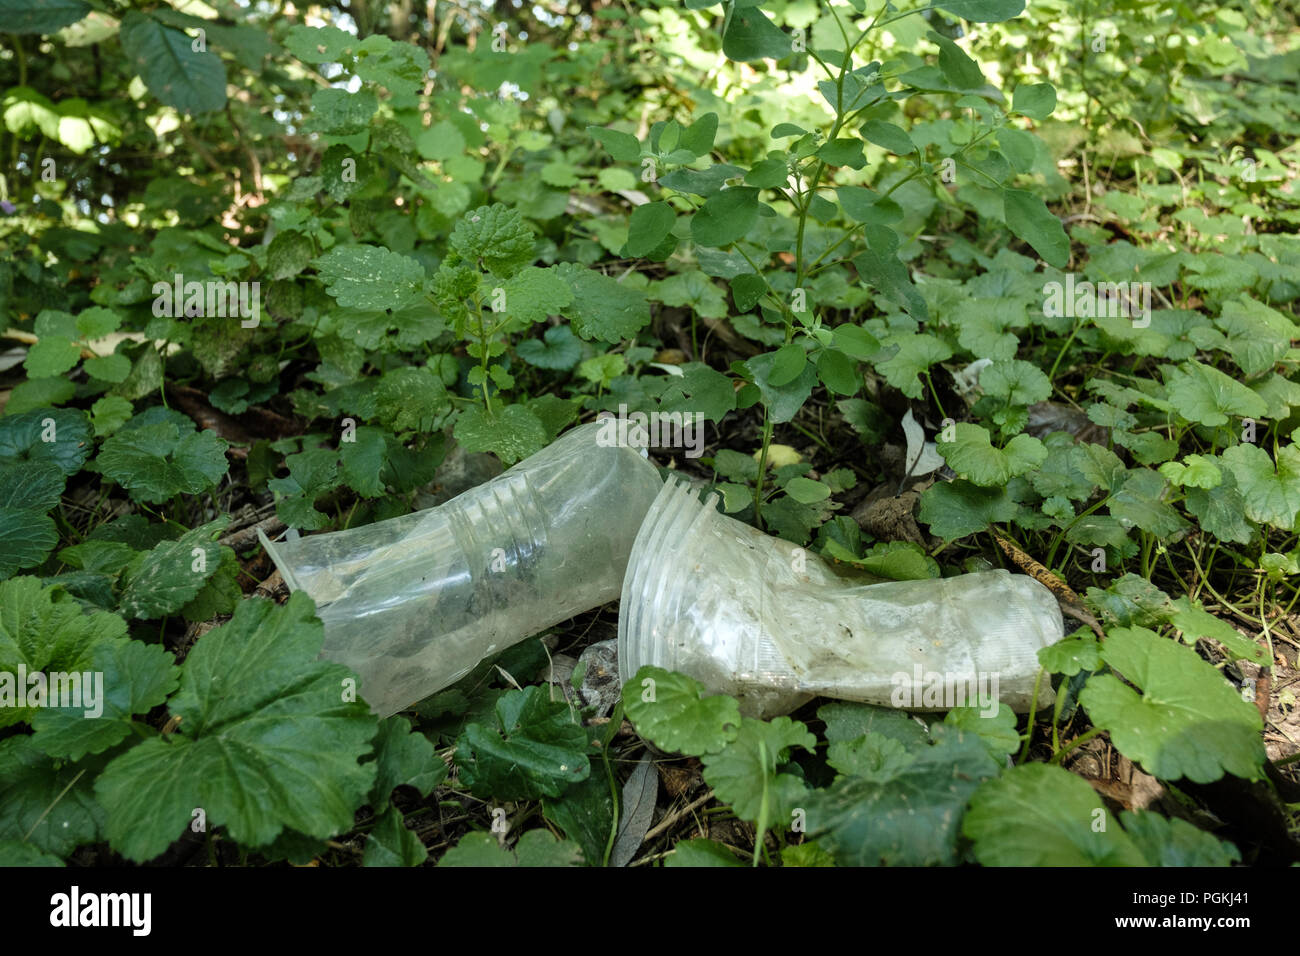 Plastic tableware.Rubbish, plastic glasses in the grass. Stock Photo